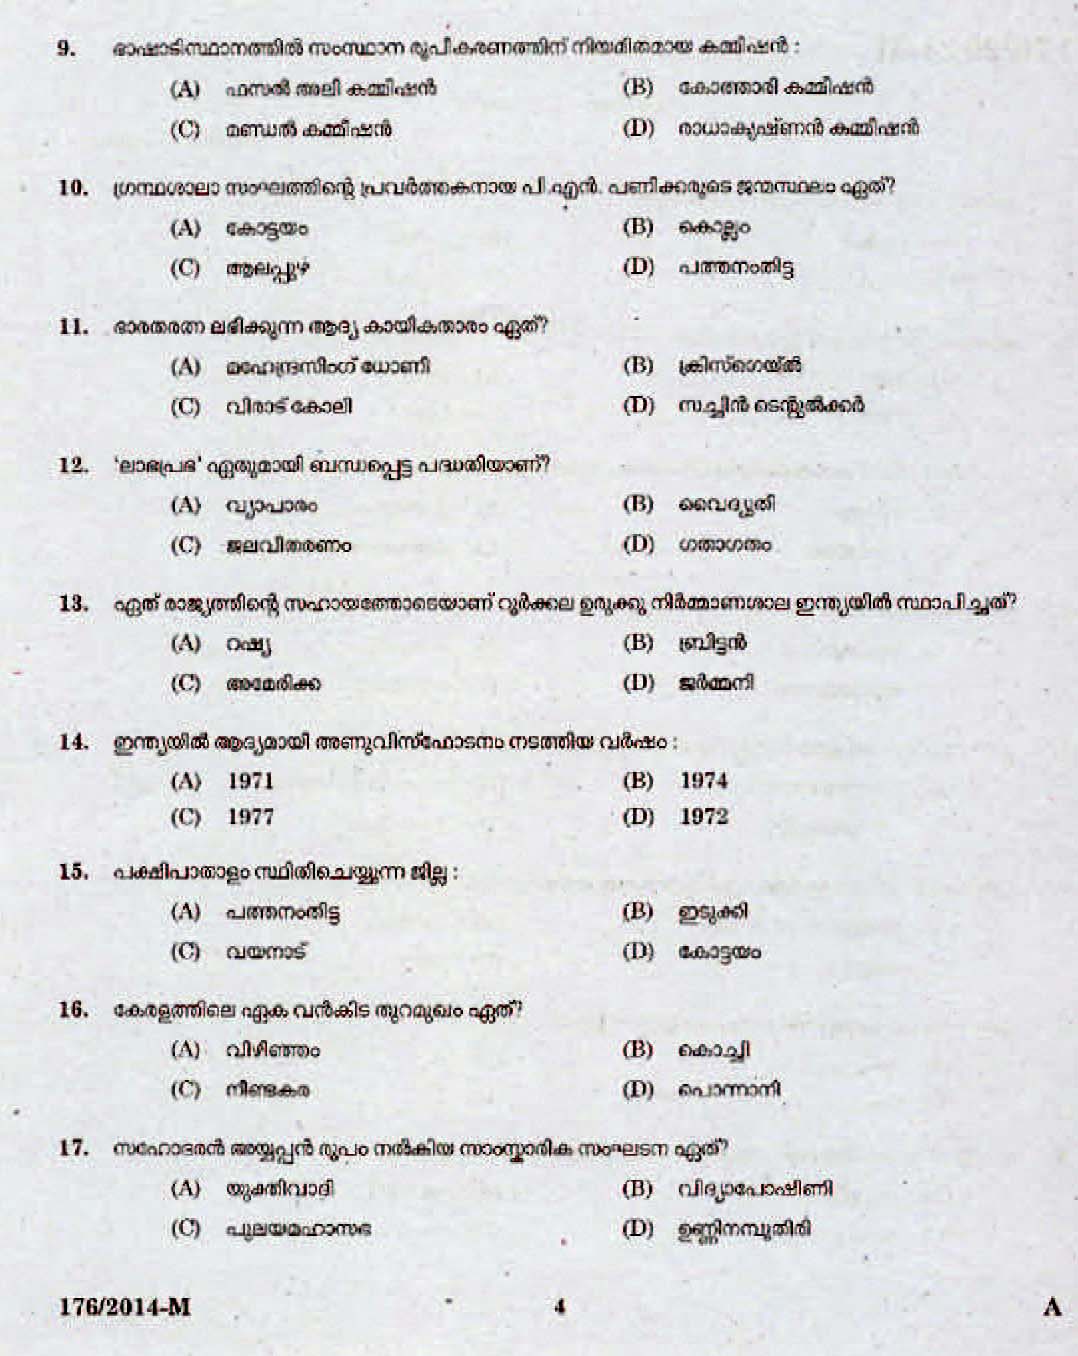 Kerala Last Grade Servants Exam 2014 Question Paper Code 1762014 M 2